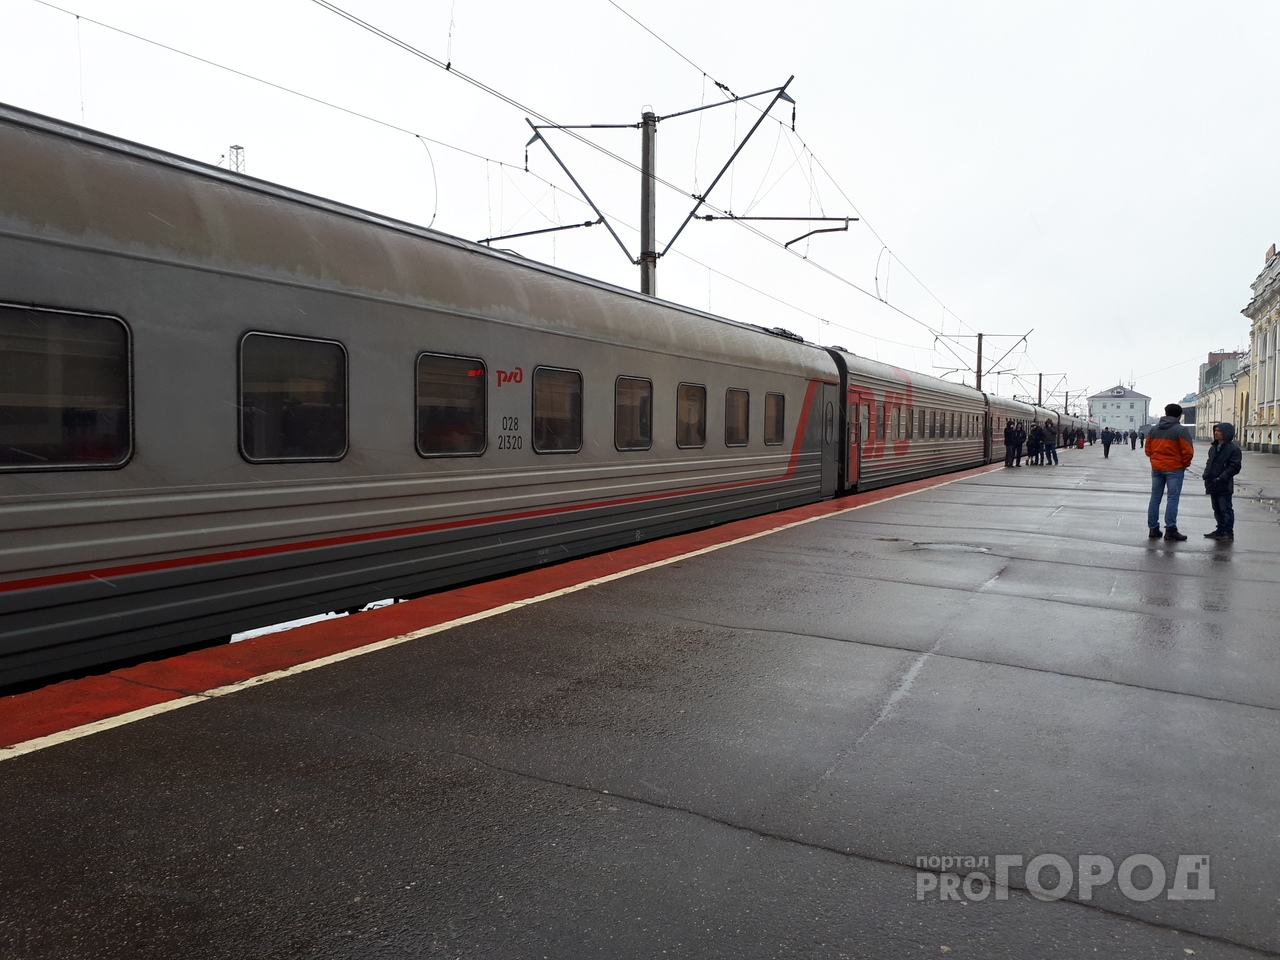 Отпуск под угрозой: в России резко подорожали билеты на поезд